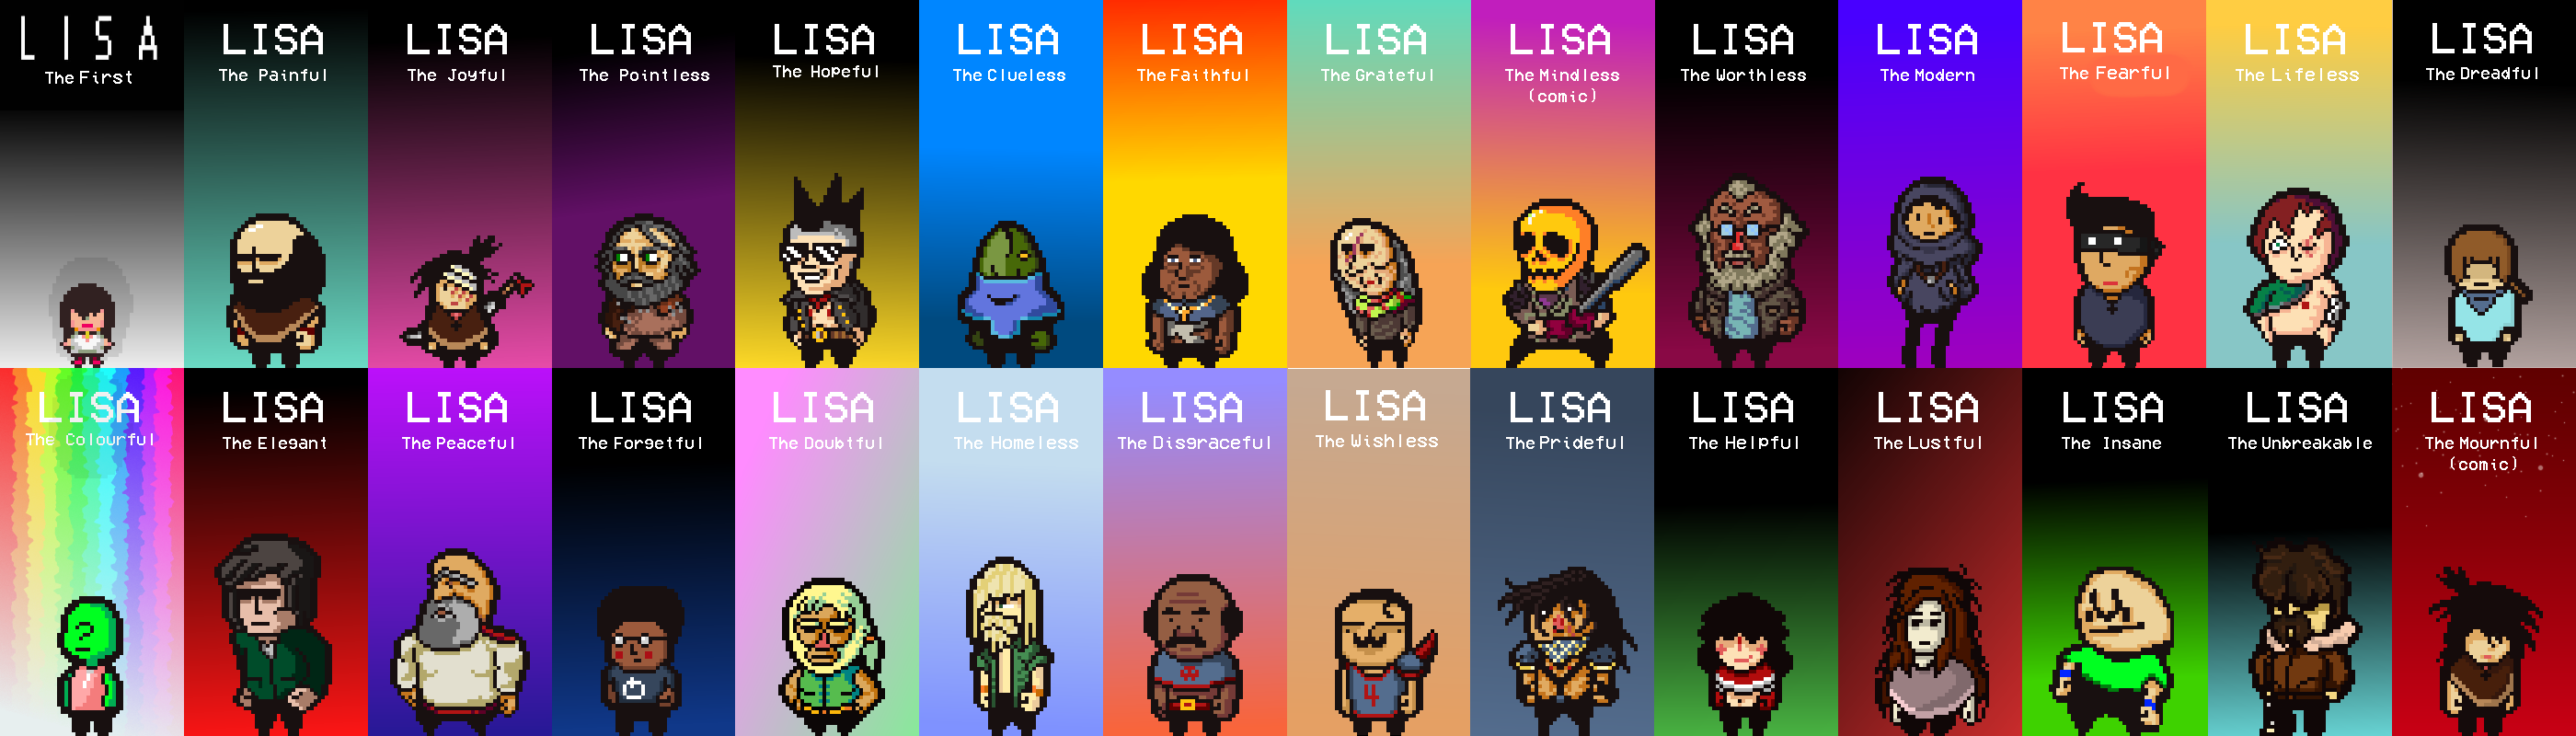 Lisa lustful